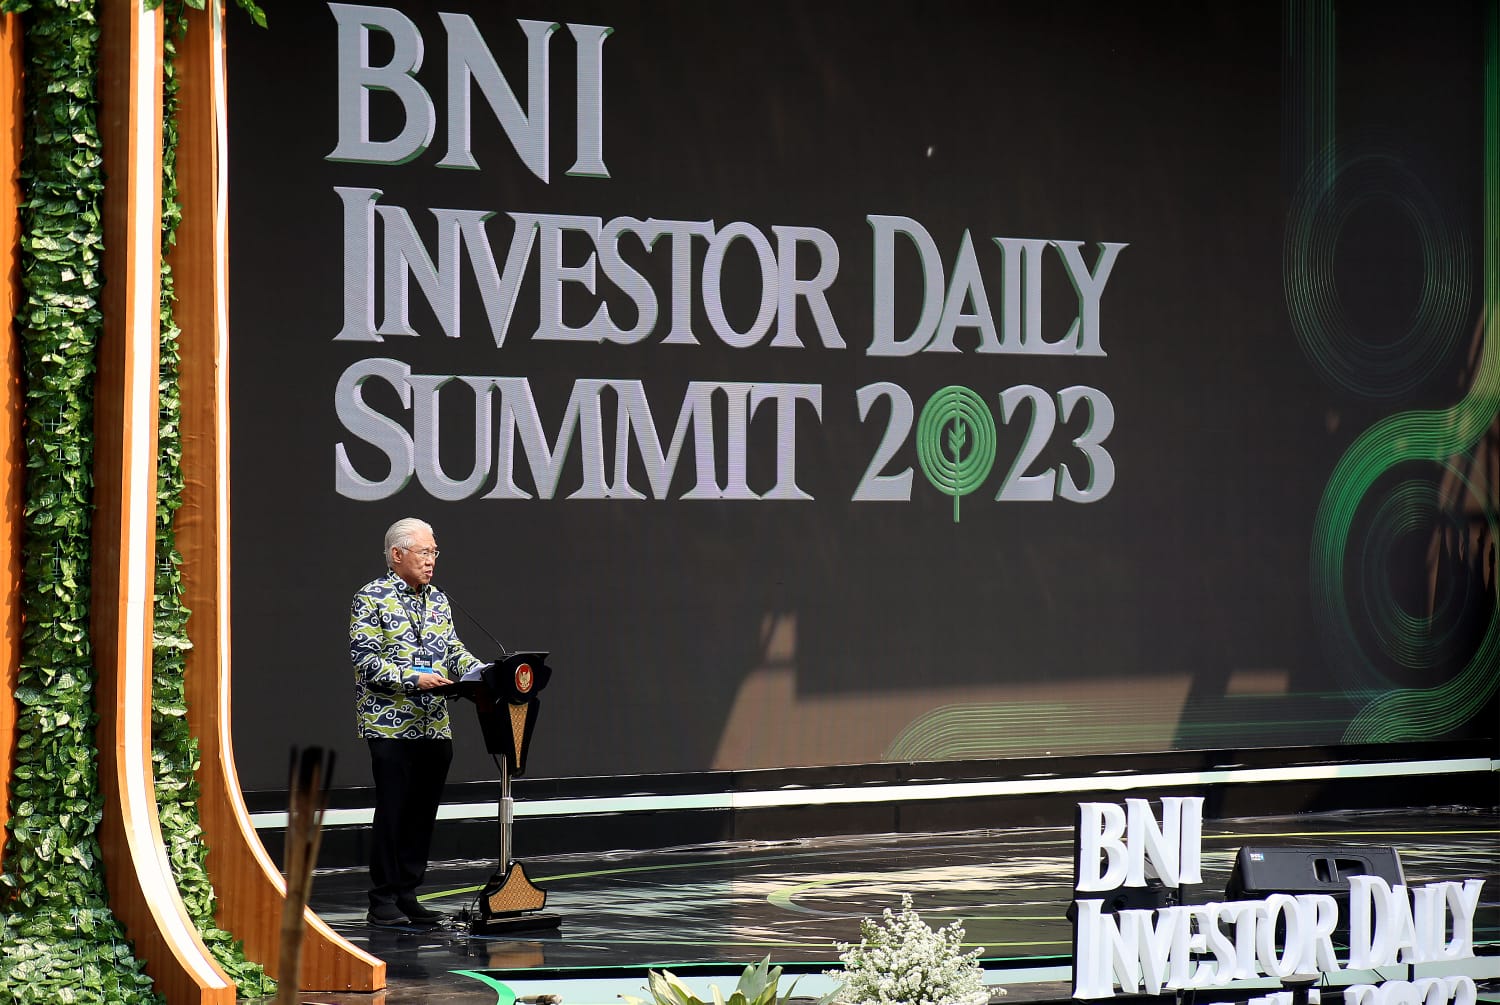 Konferensi Investasi Paling Asri, BNI Investor Daily Summit 2023 Dorong Ekonomi Berkelanjutan